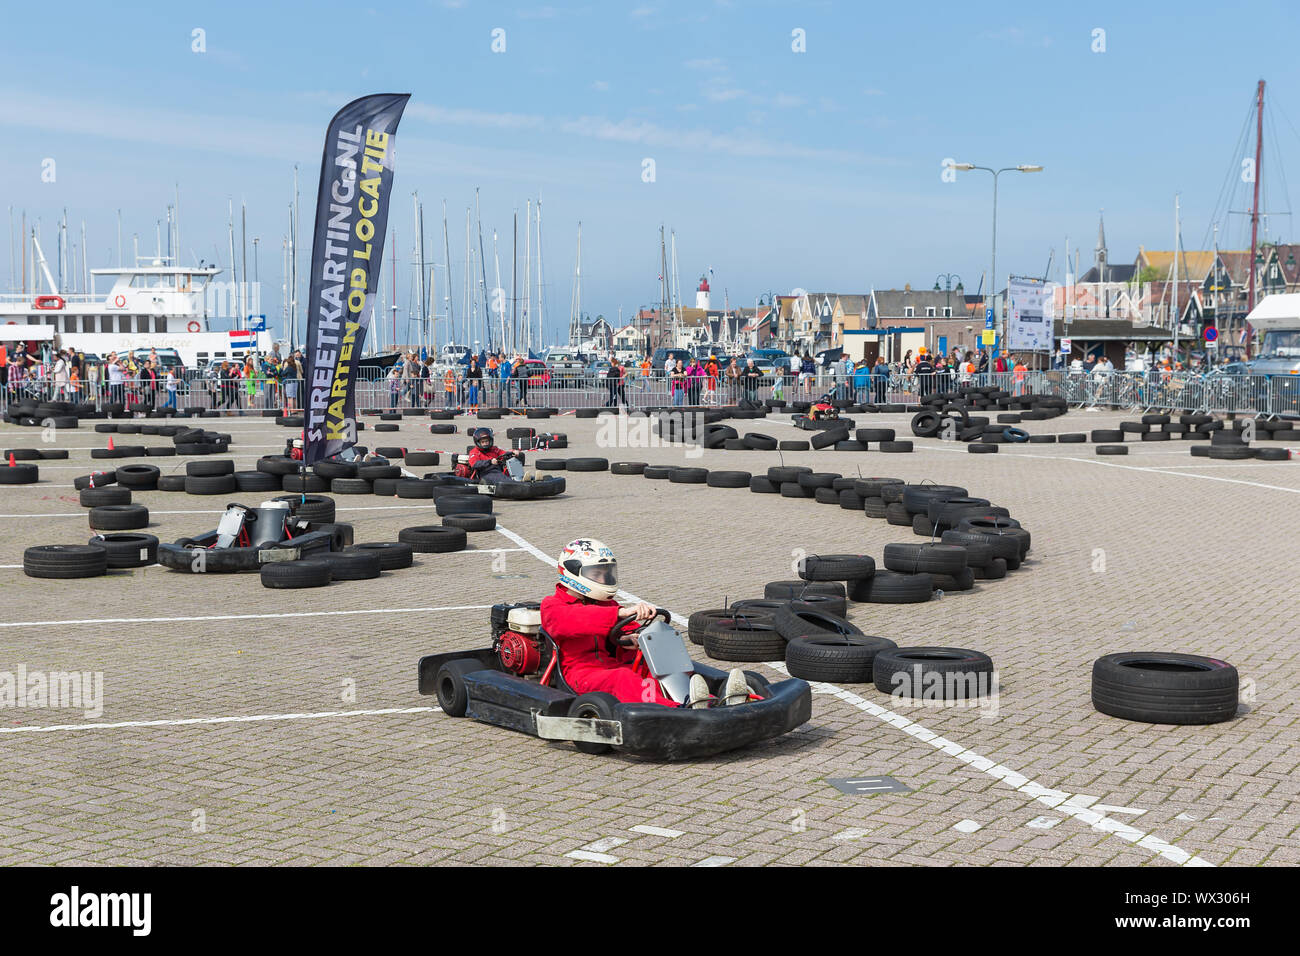 Courses de kart à une fête nationale dans le port d'Amsterdam, Pays-Bas Banque D'Images